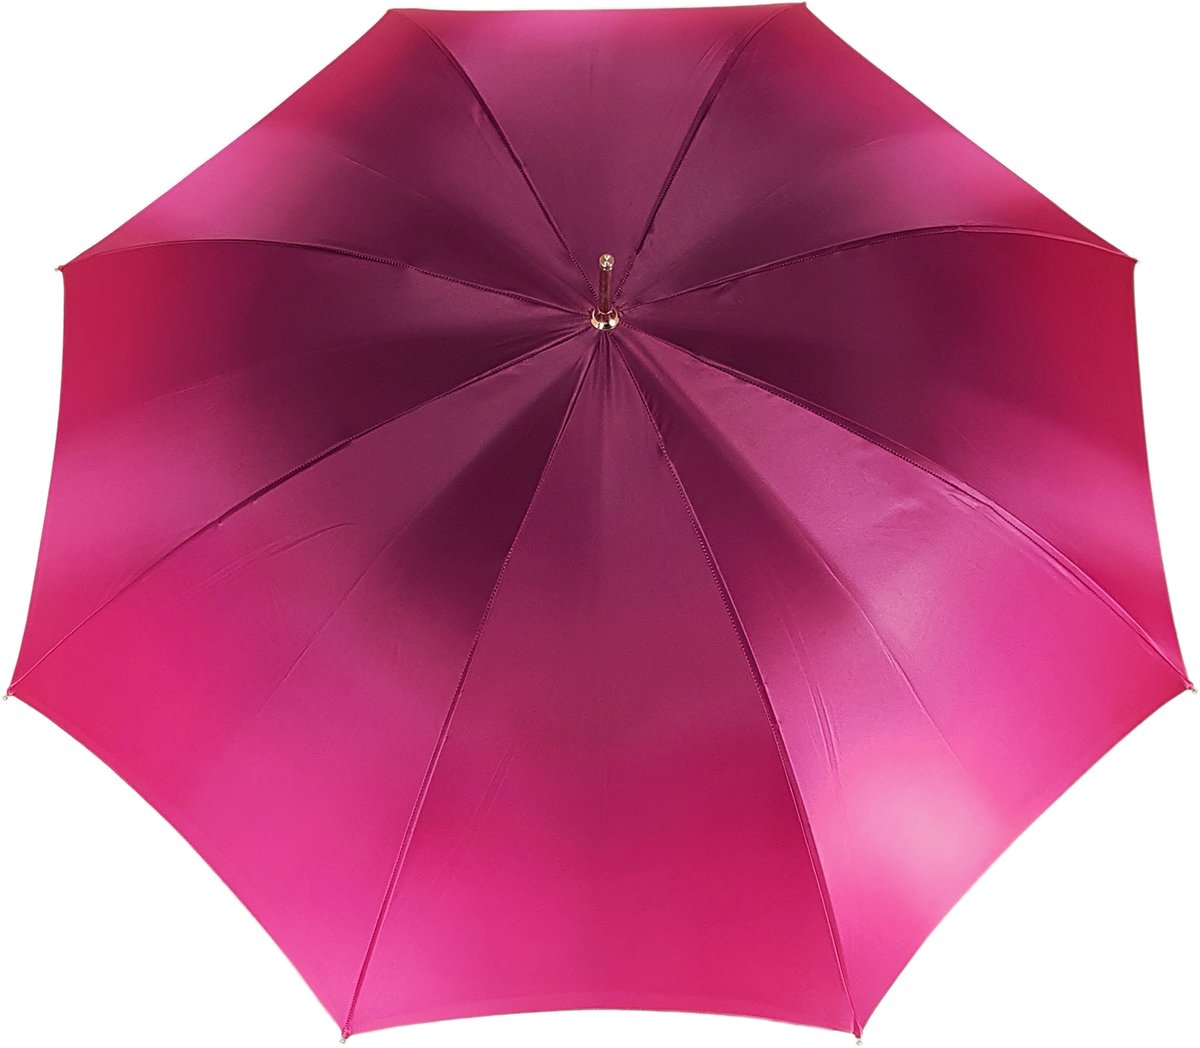 Lovely Fuchsia Shade Umbrella, New Flowered Exclusive By il Marchesato - il-marchesato